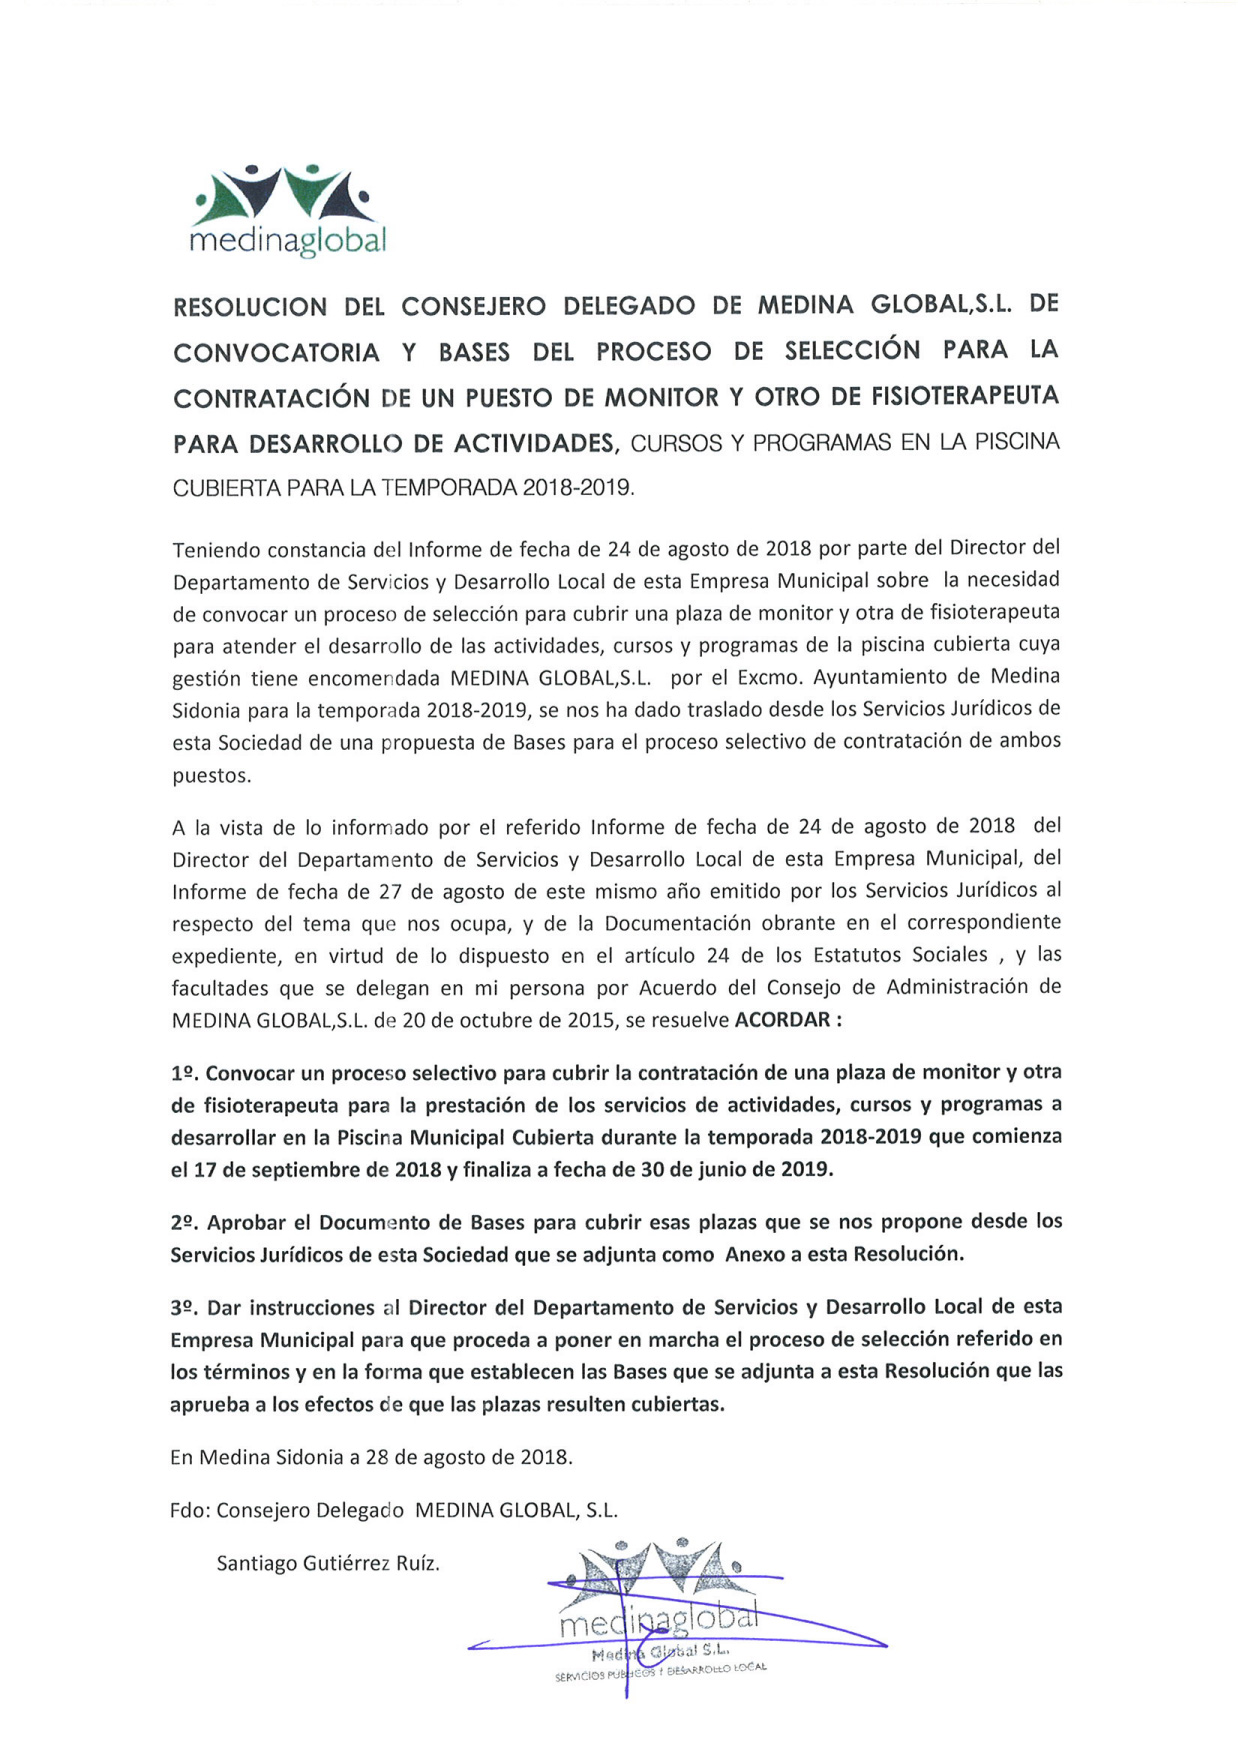 RESOLUCION CONSEJERO DELEGADO APROBACION DE LA CONVOCATORIA Y LAS BASES DE MONITOR Y FISIO 2018-2019